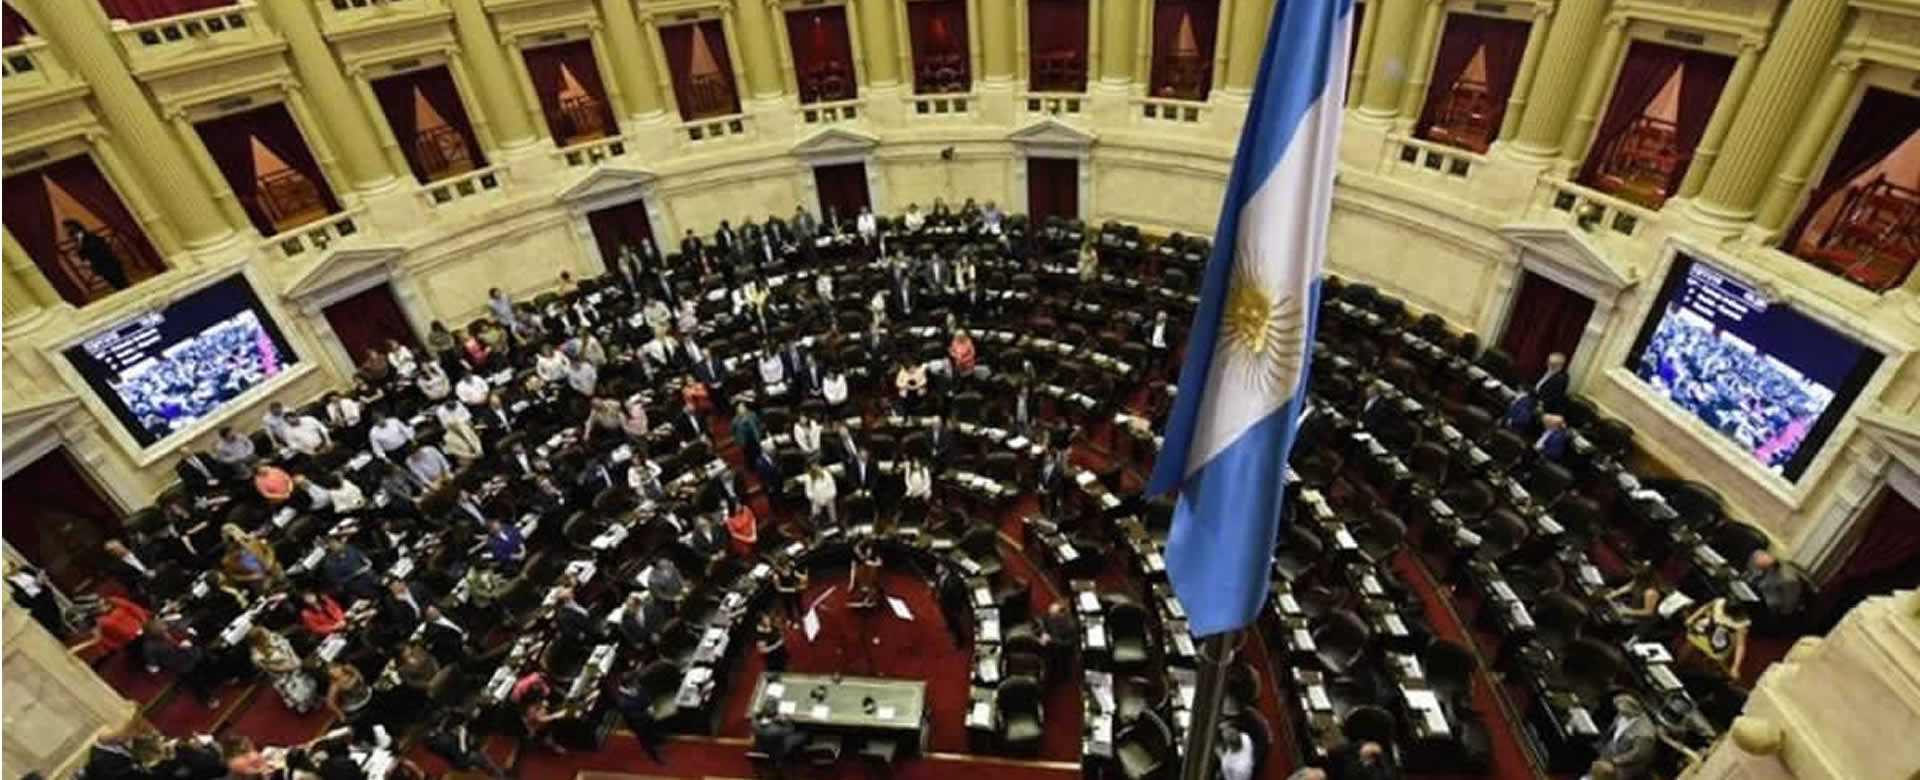 Diputados en Argentina repudian quiebre del orden democrático en Bolivia